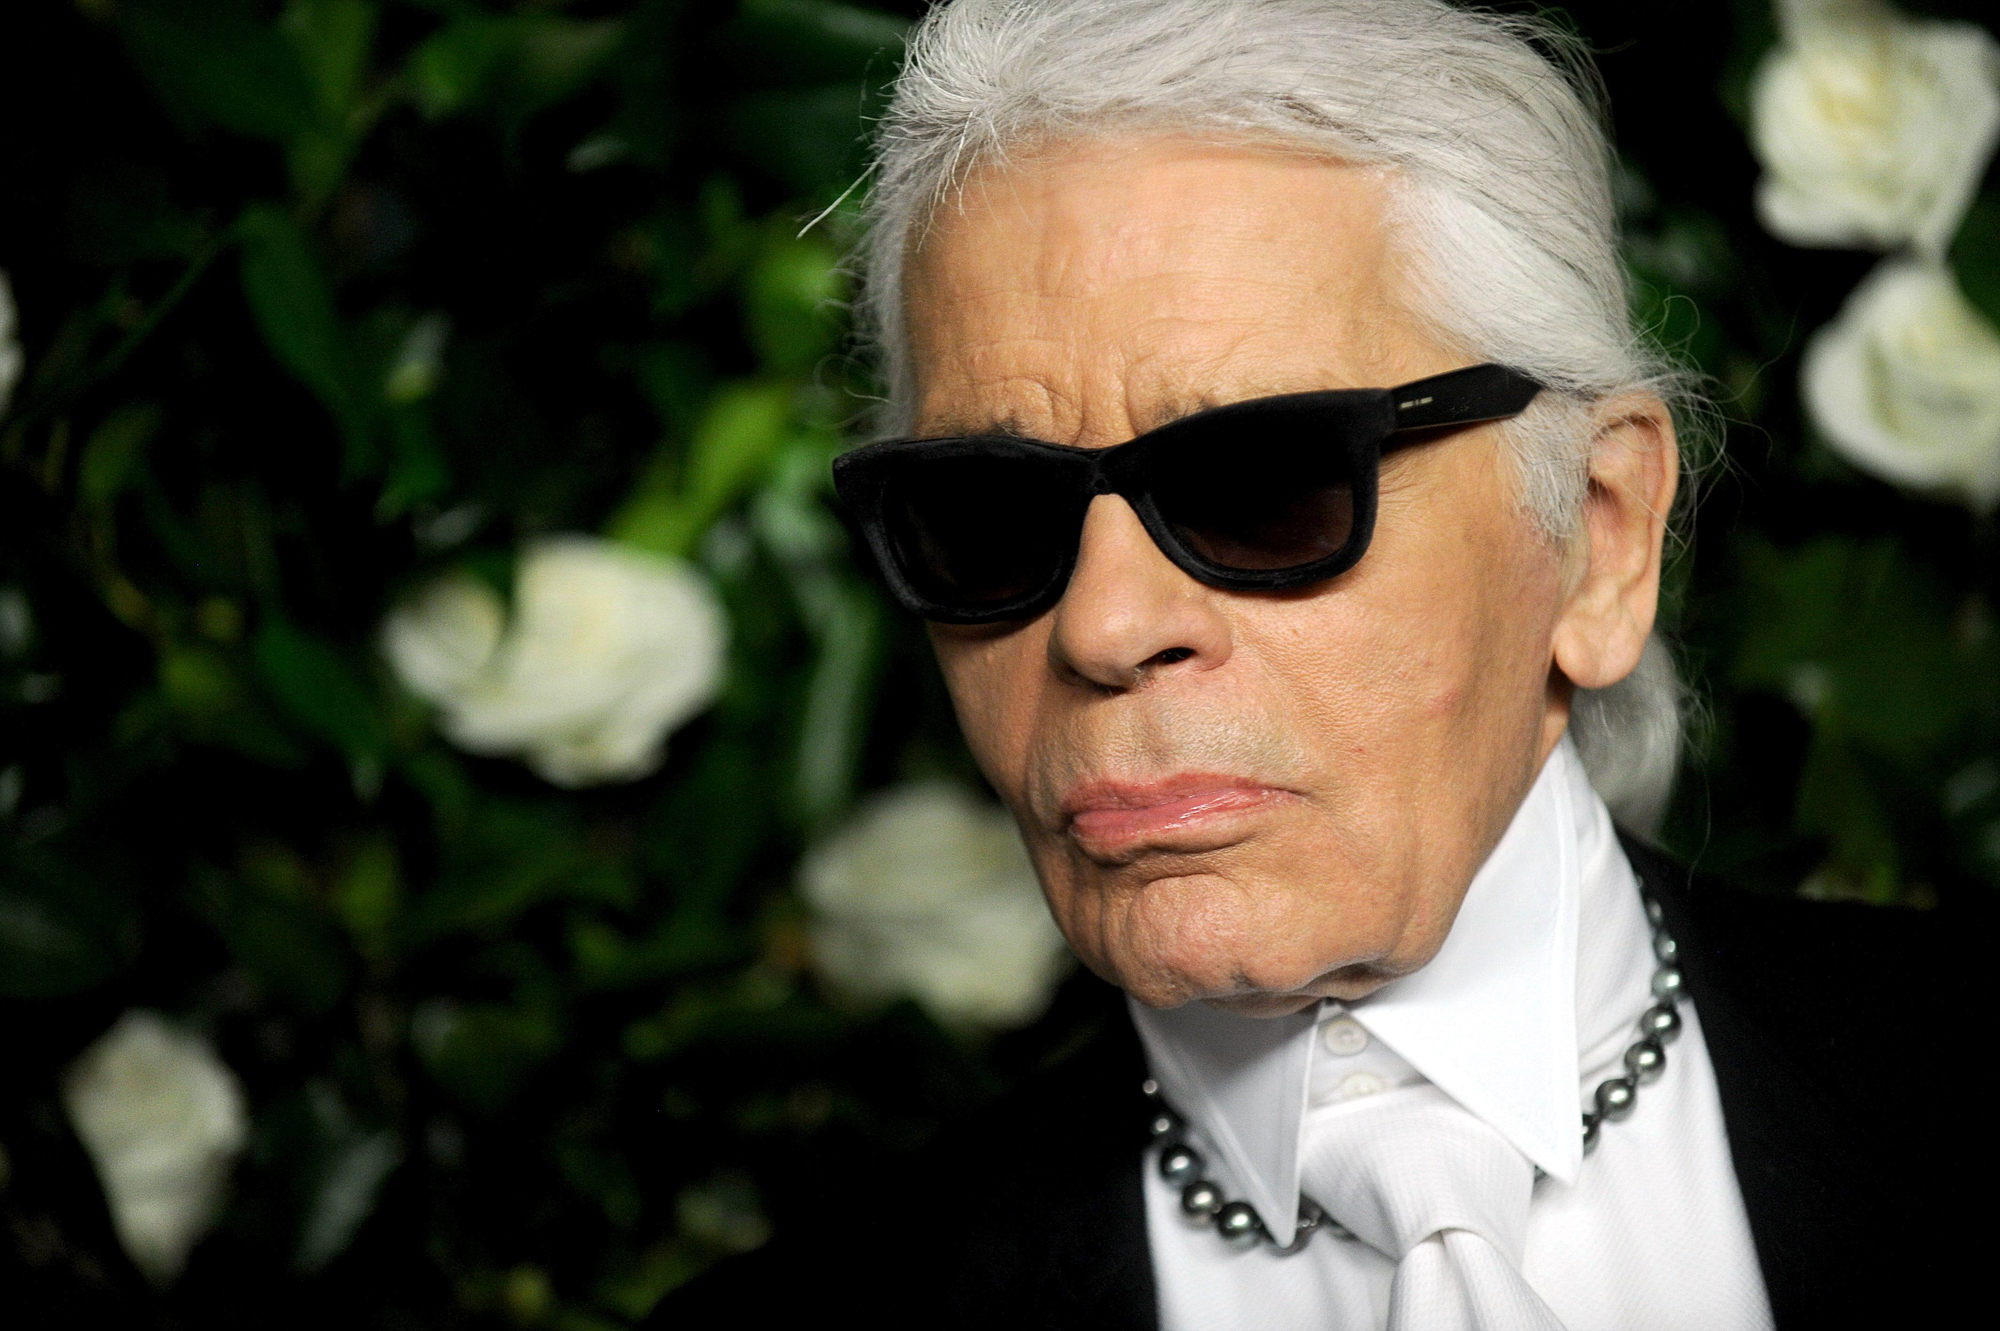 Fashion designer Karl Lagerfeld dies